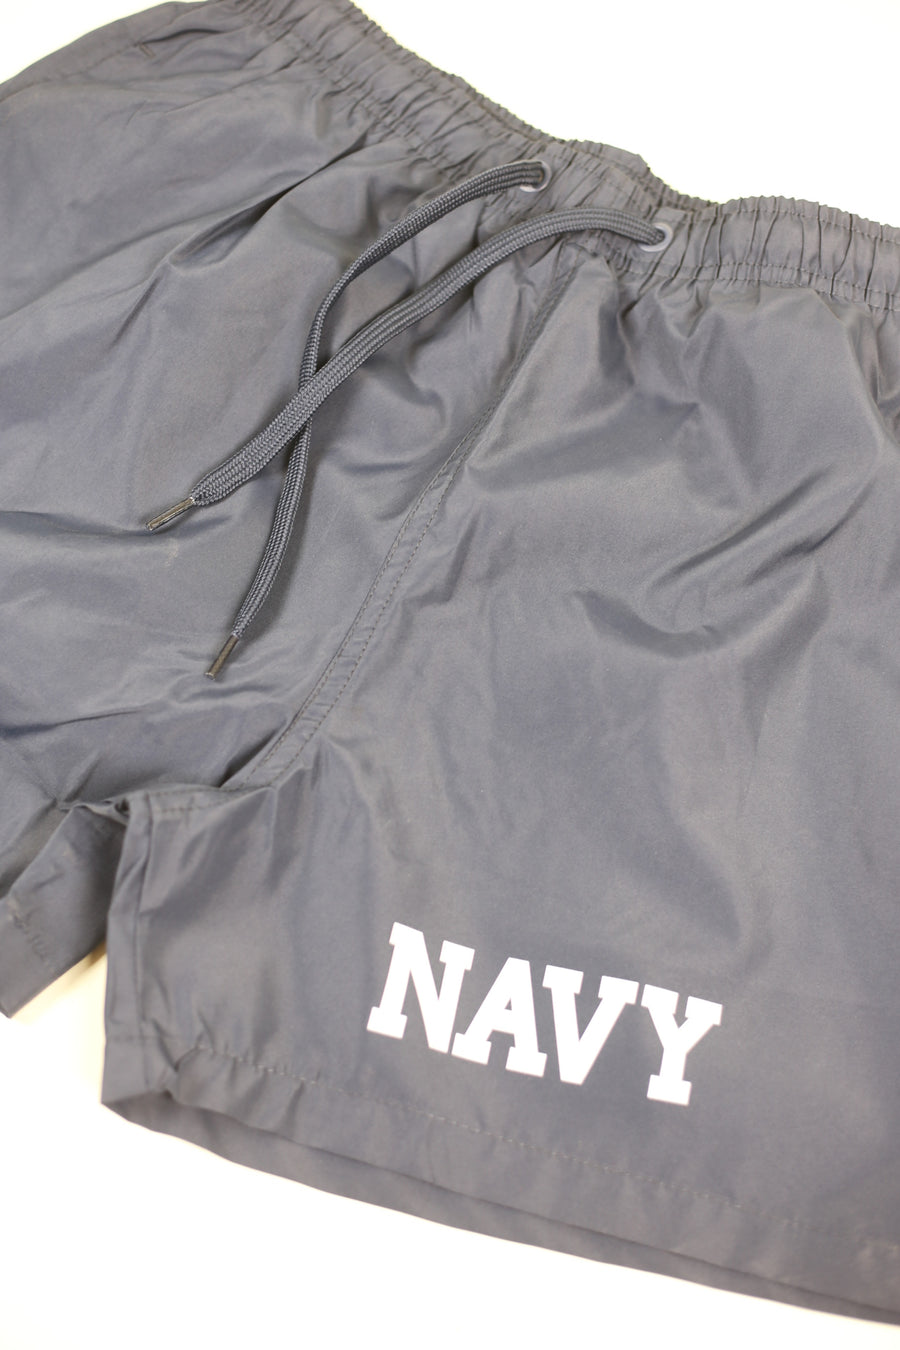 Costume US Navy